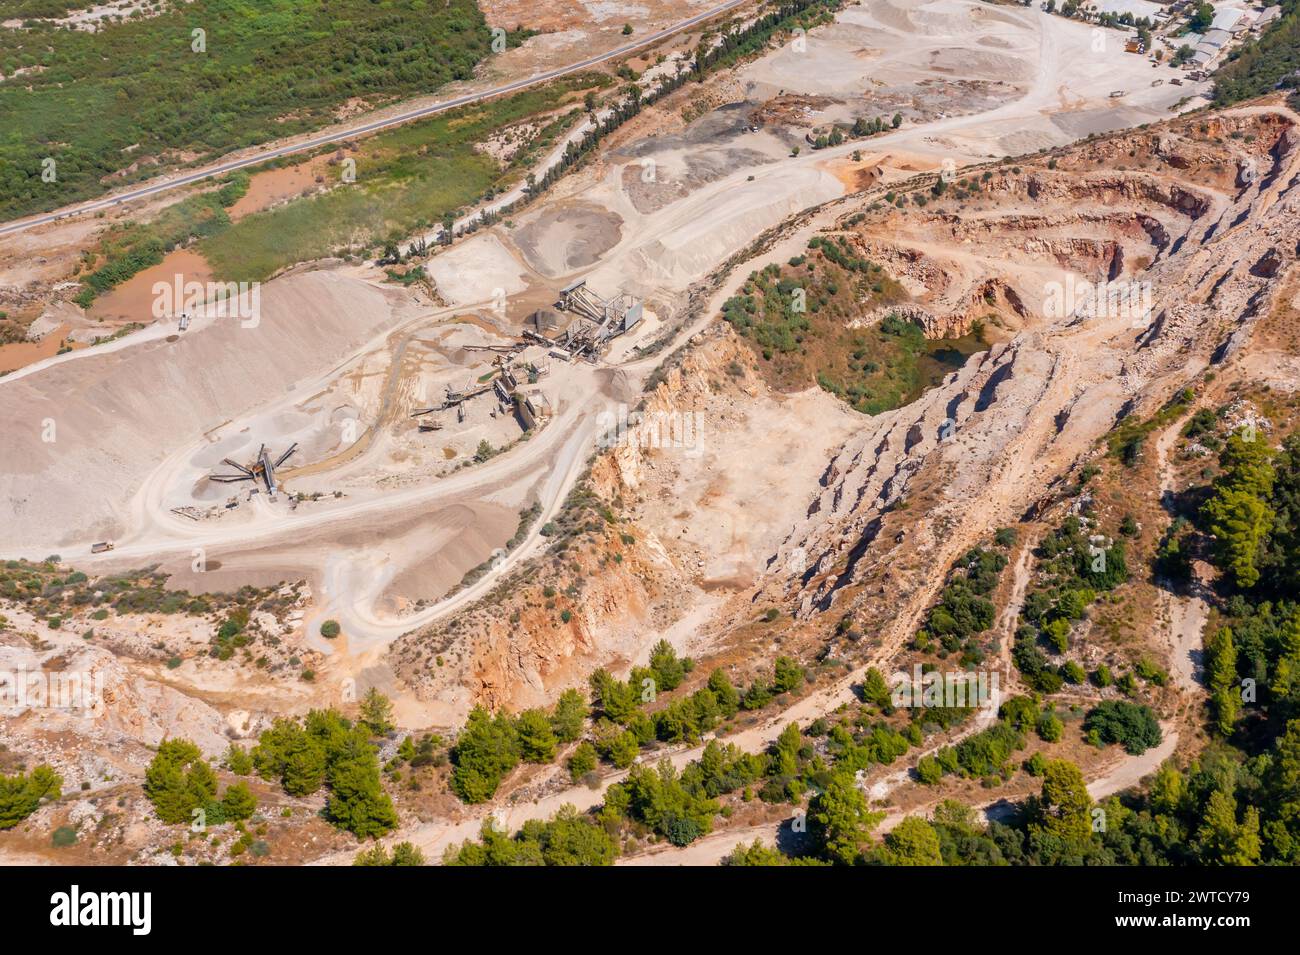 Vista aerea della cava mineraria a cielo aperto con molti macchinari in funzione vista sopra. L'area è stata estratta per rame, argento, oro e altri minerali. Foto Stock